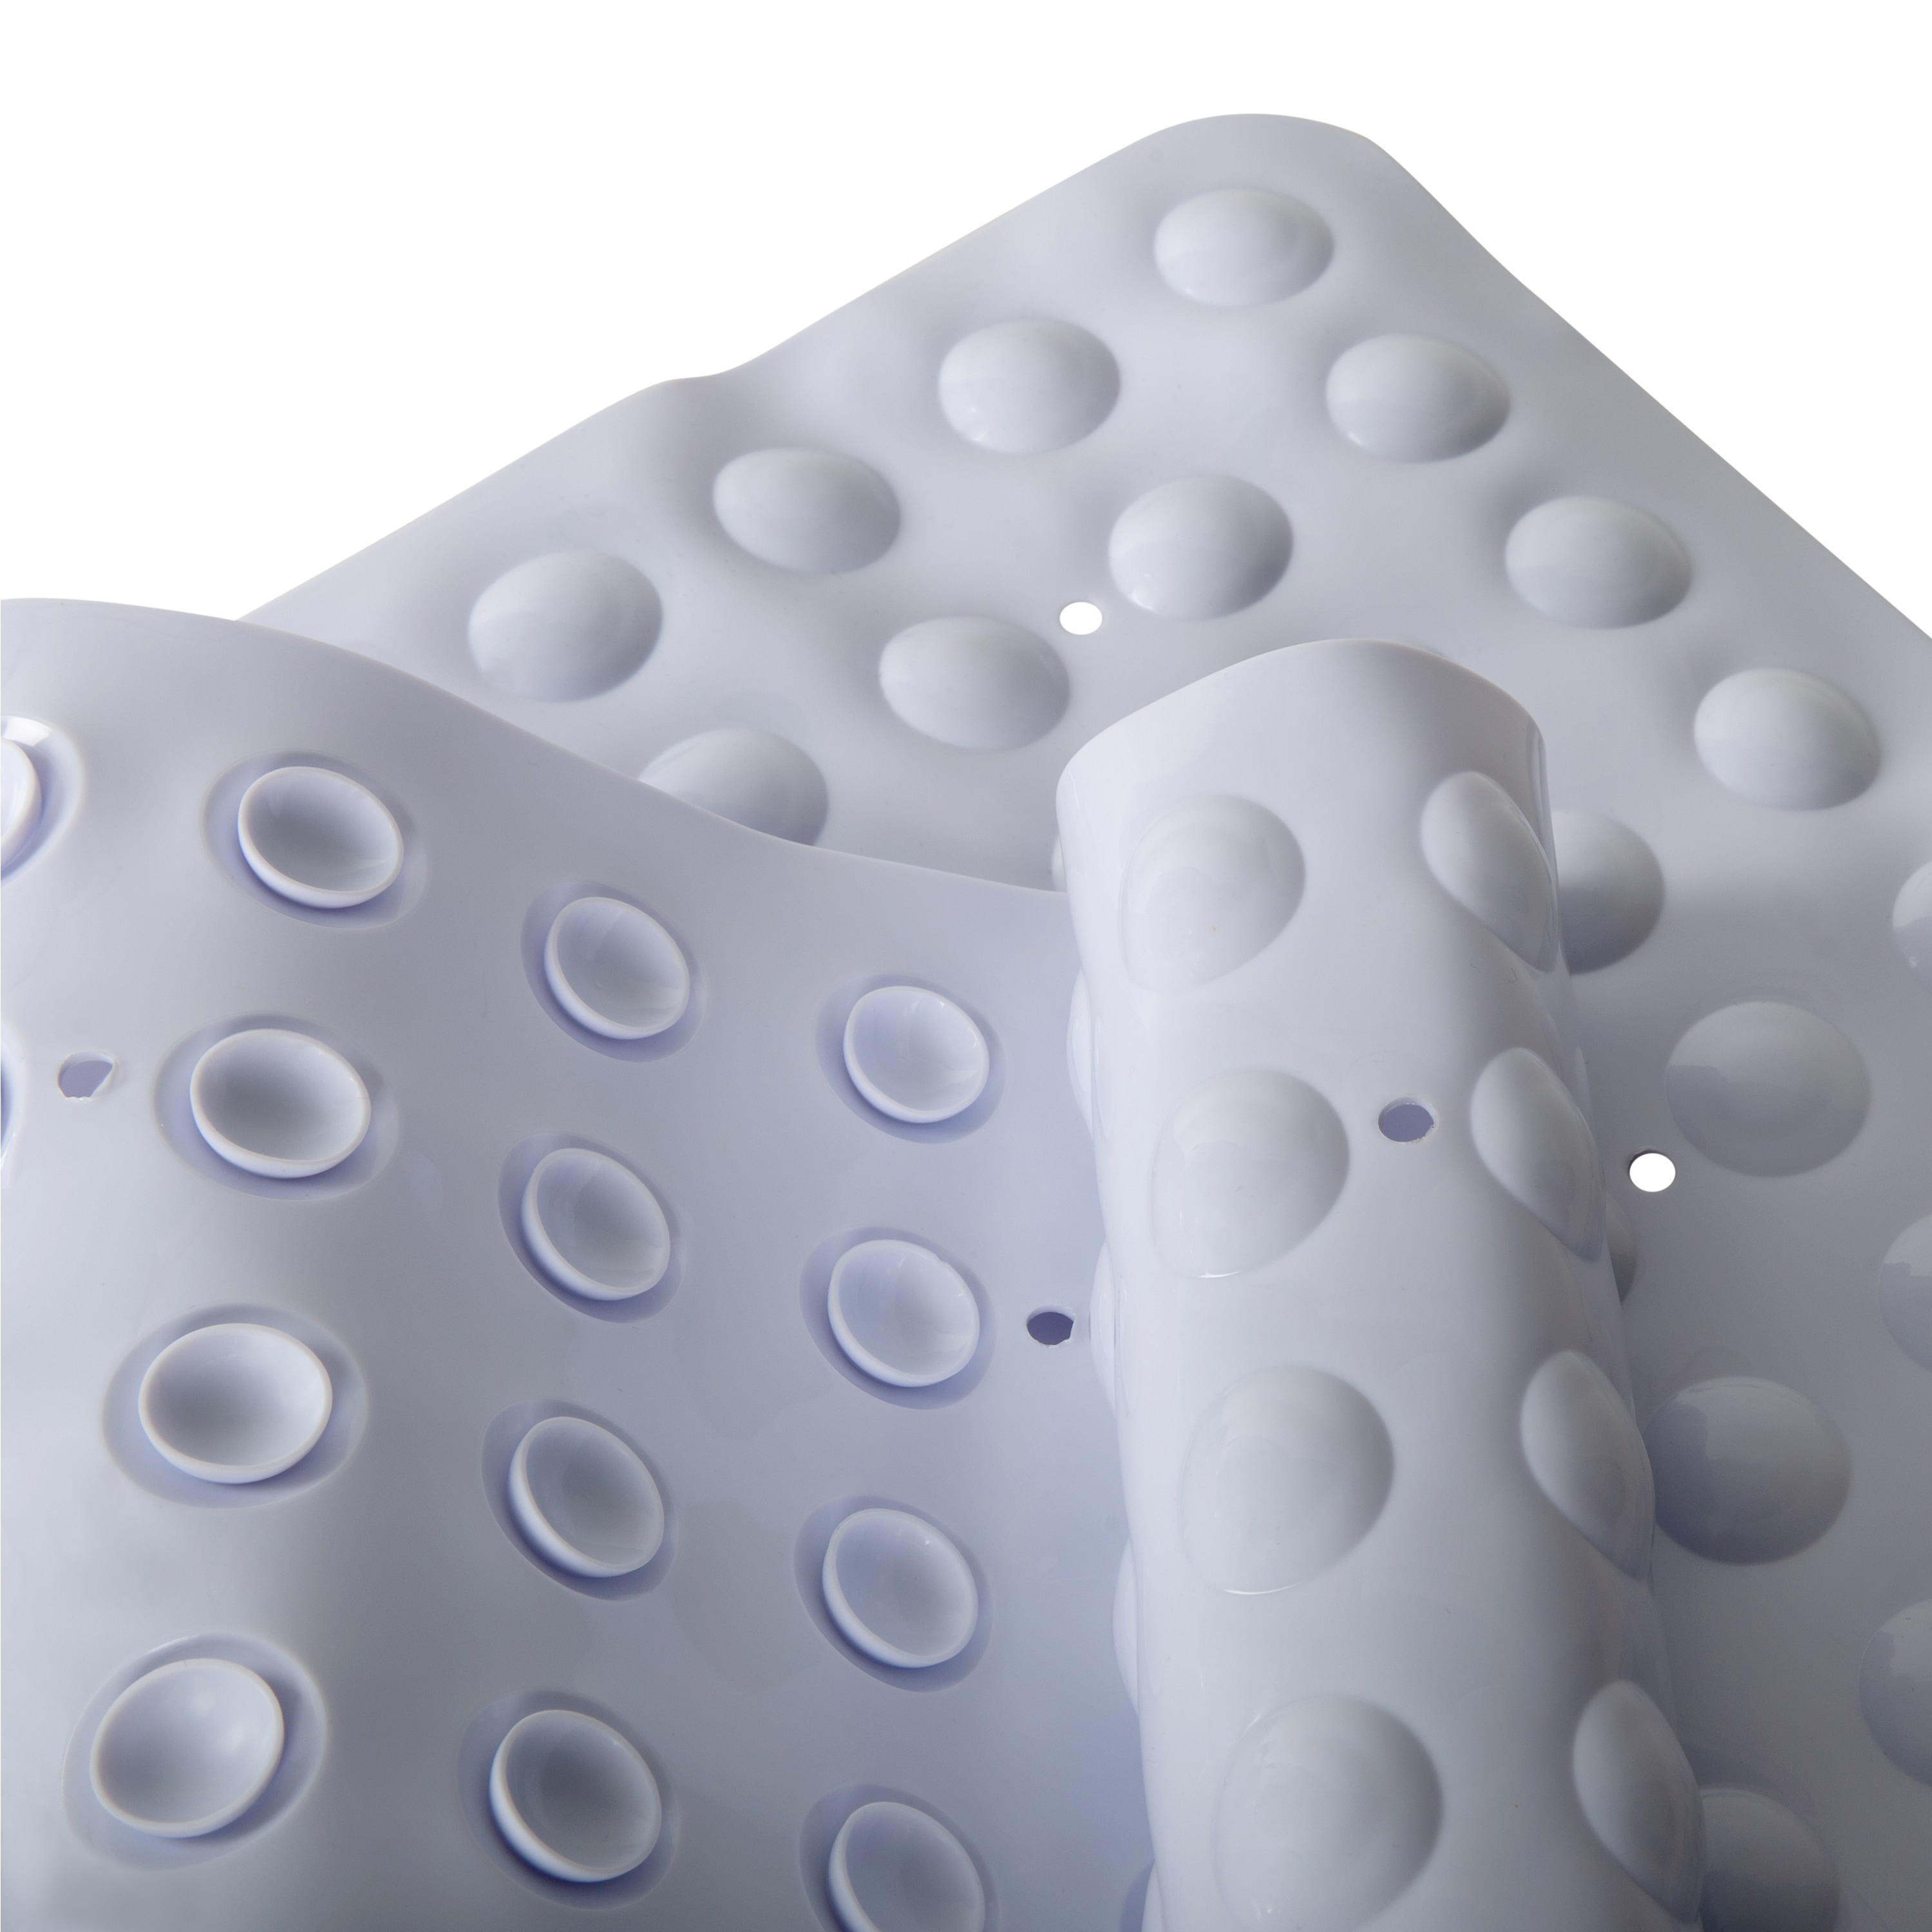 Kenney - White Bubble Microban PVC Bath Mat